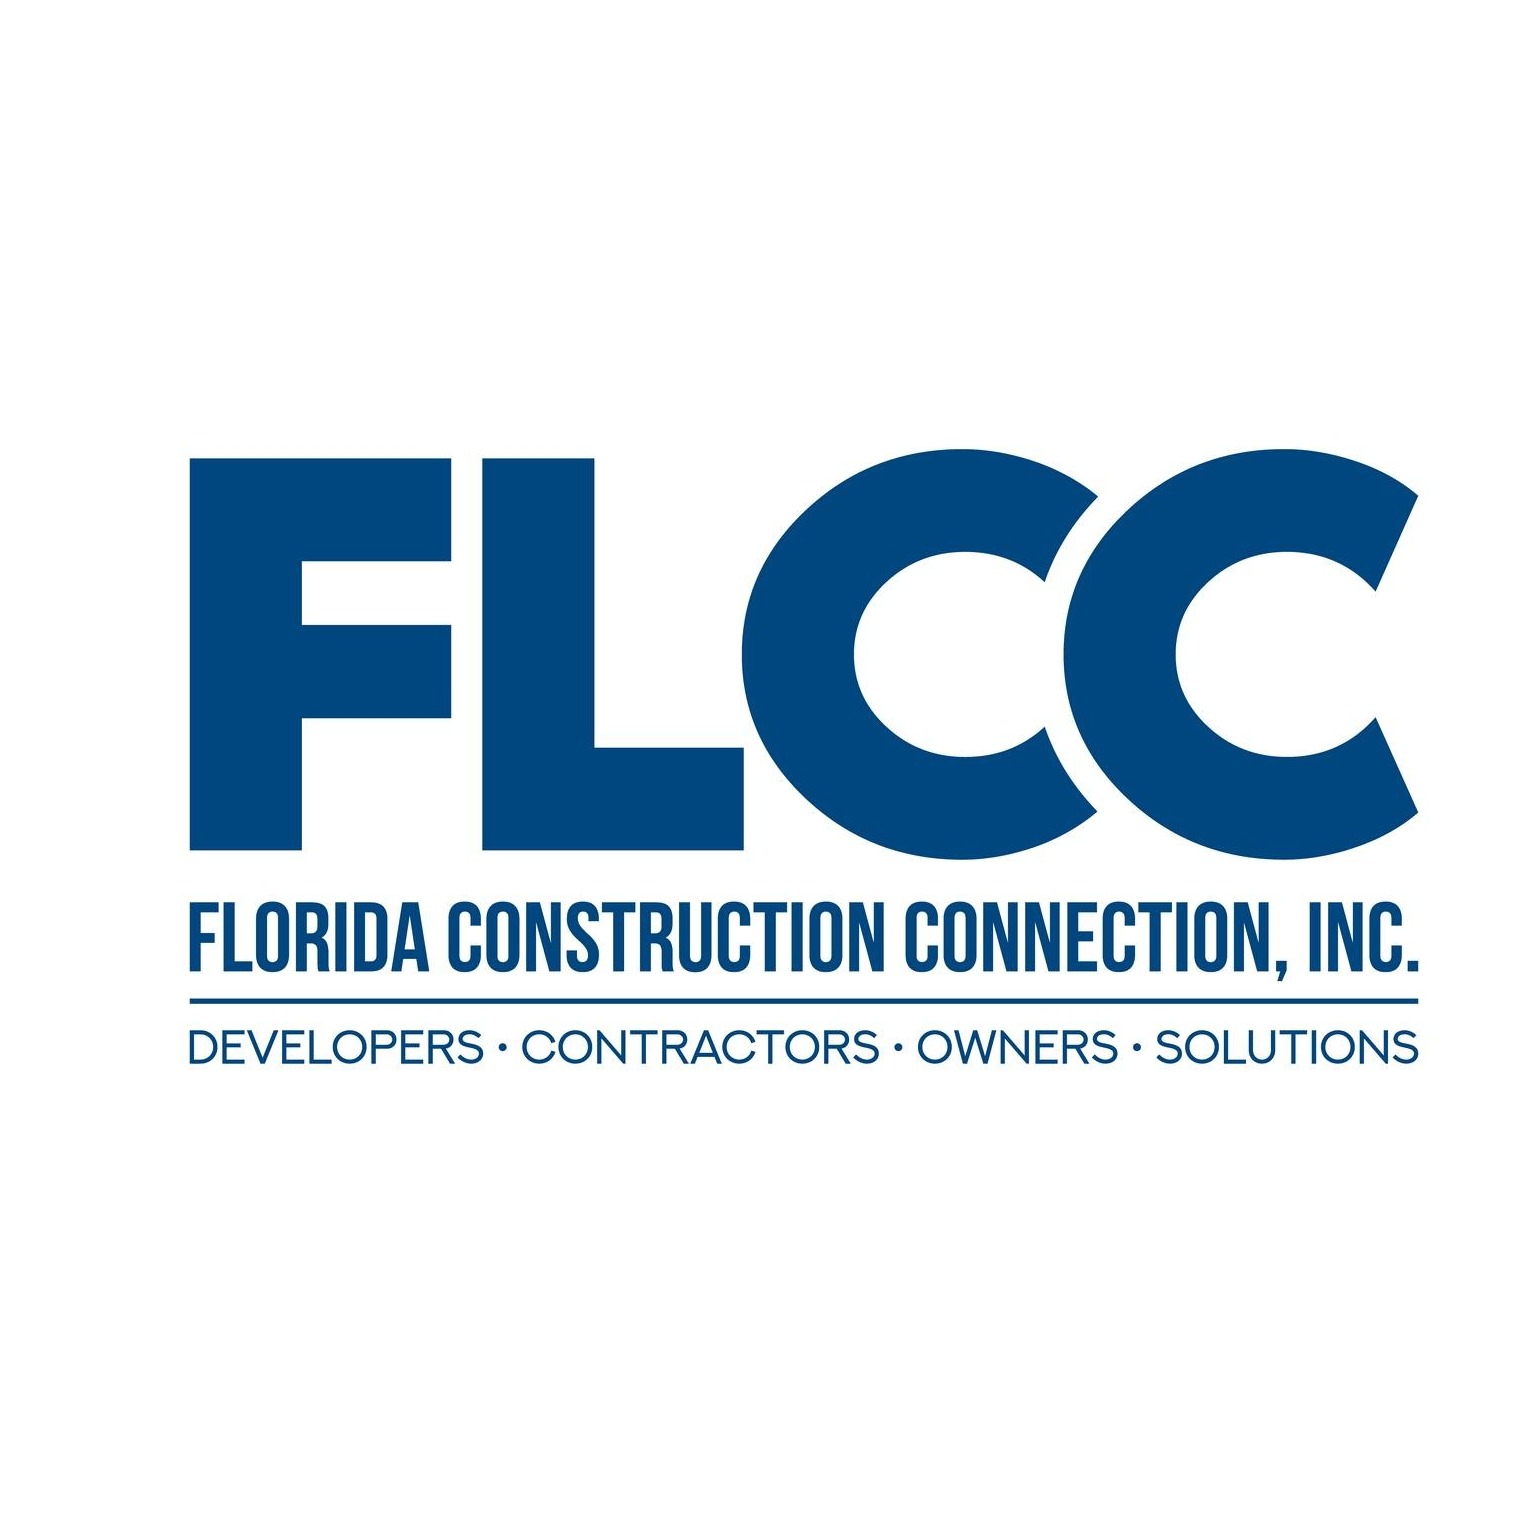 Florida Construction Connection